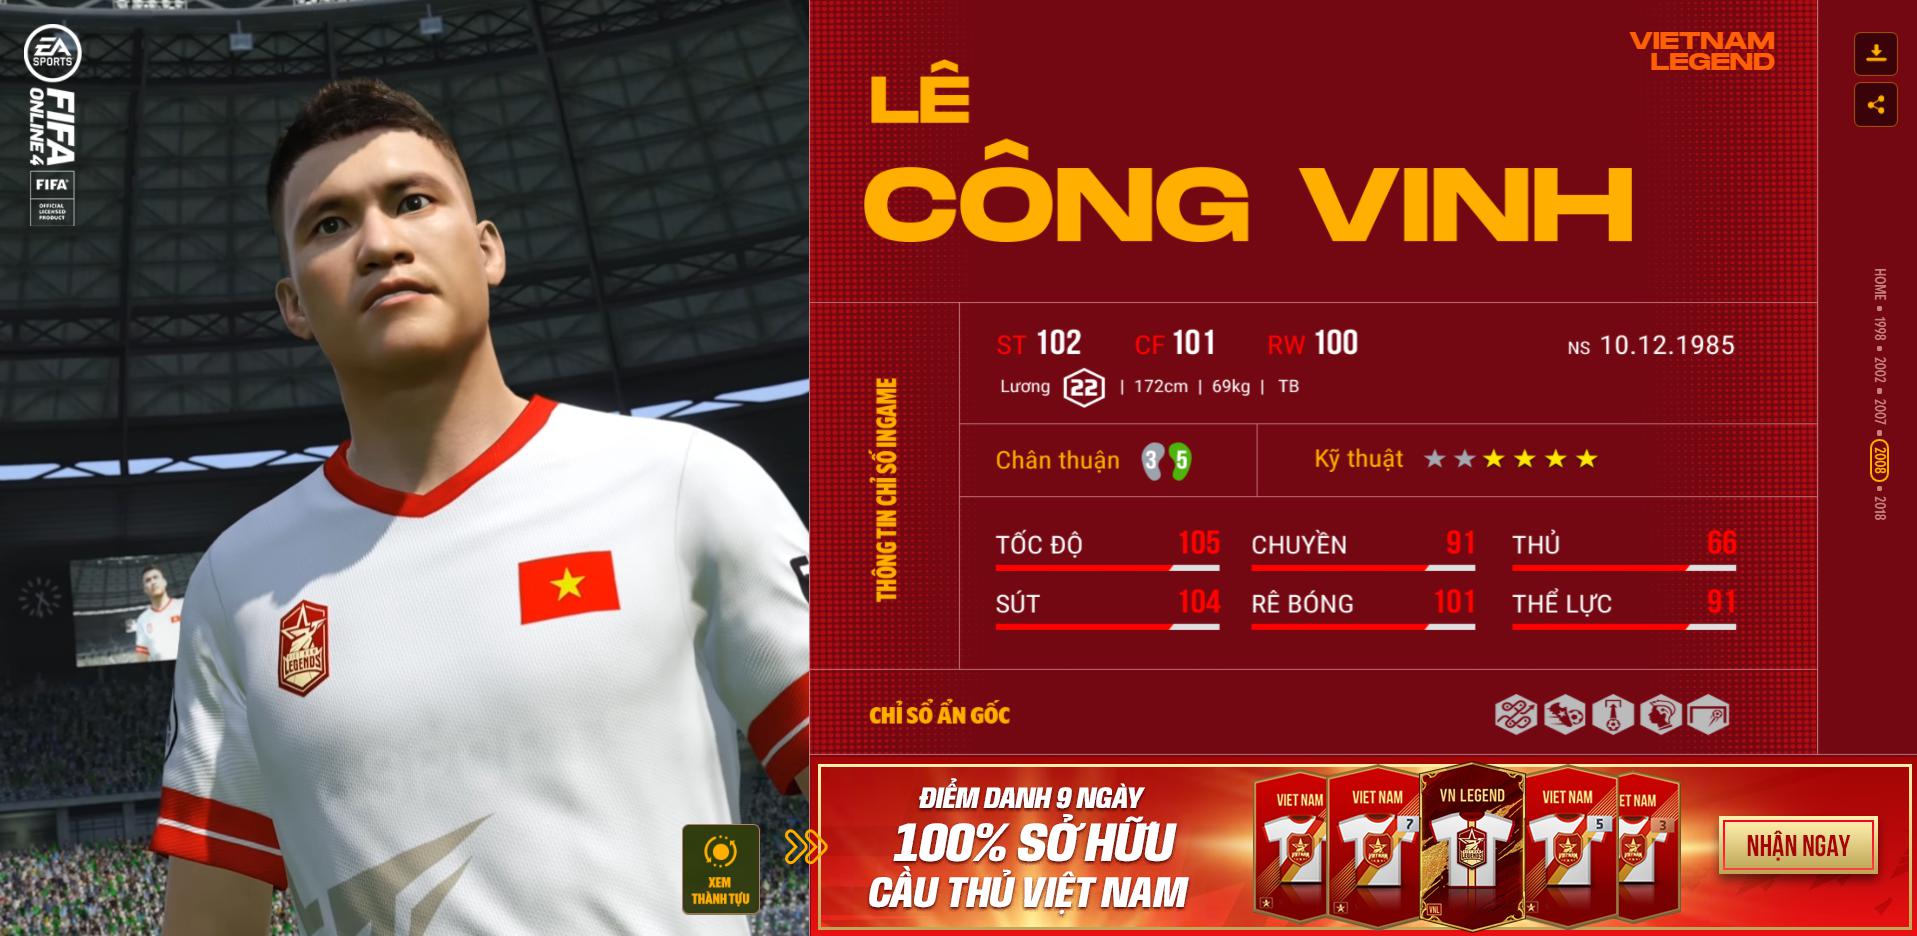 Hồng Sơn và các huyền thoại bóng đá Việt Nam bất ngờ xuất hiện trong FIFA Online 4 - Ảnh 9.